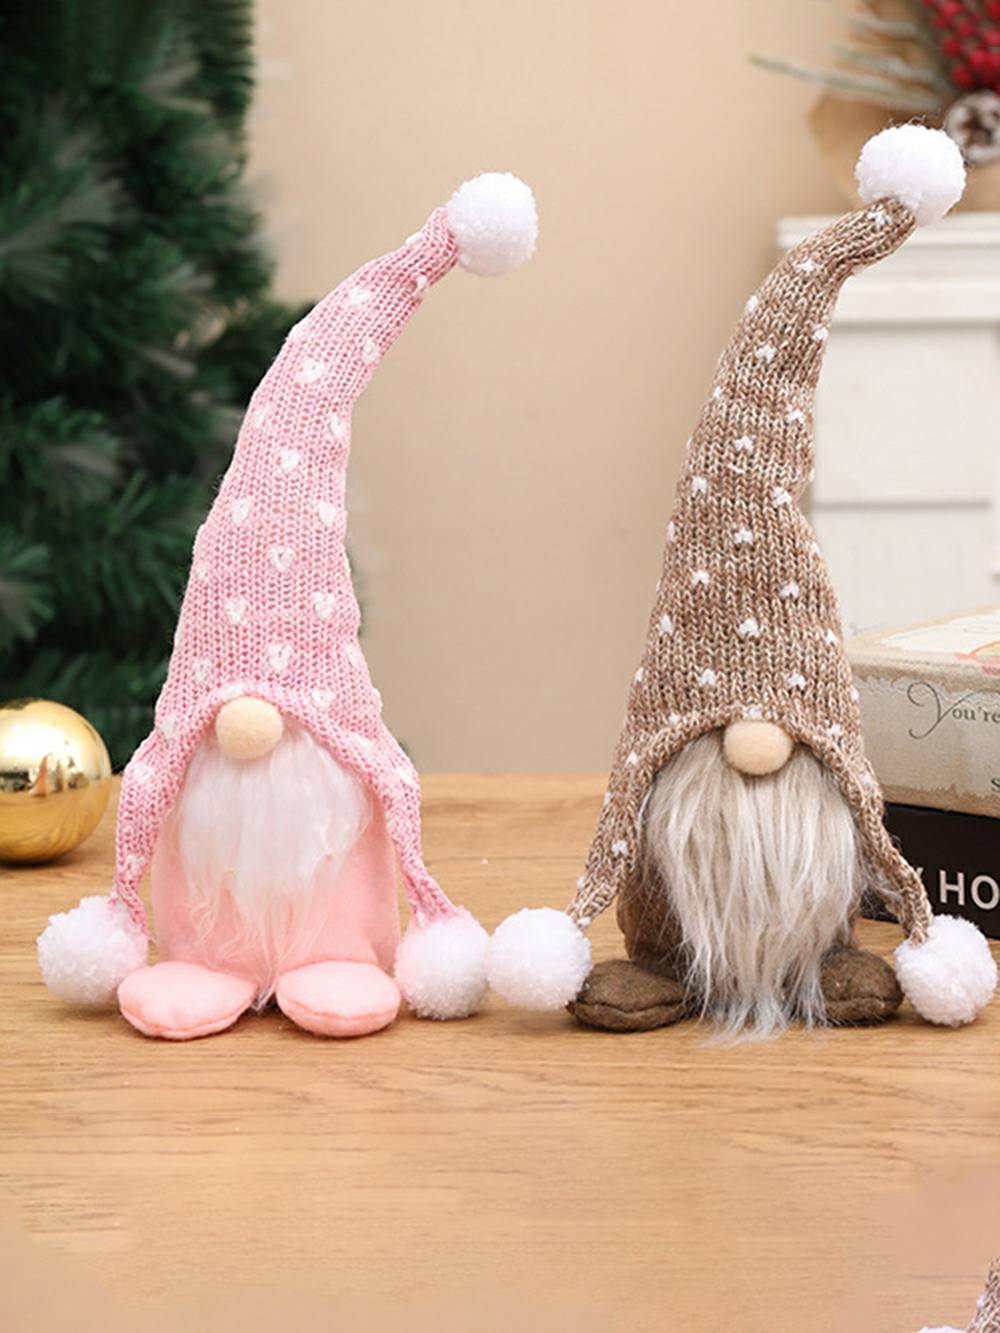 Weihnachts-Plüsch-Elfe, weißer Bart, Pom-Pom, Rudolph-Puppe